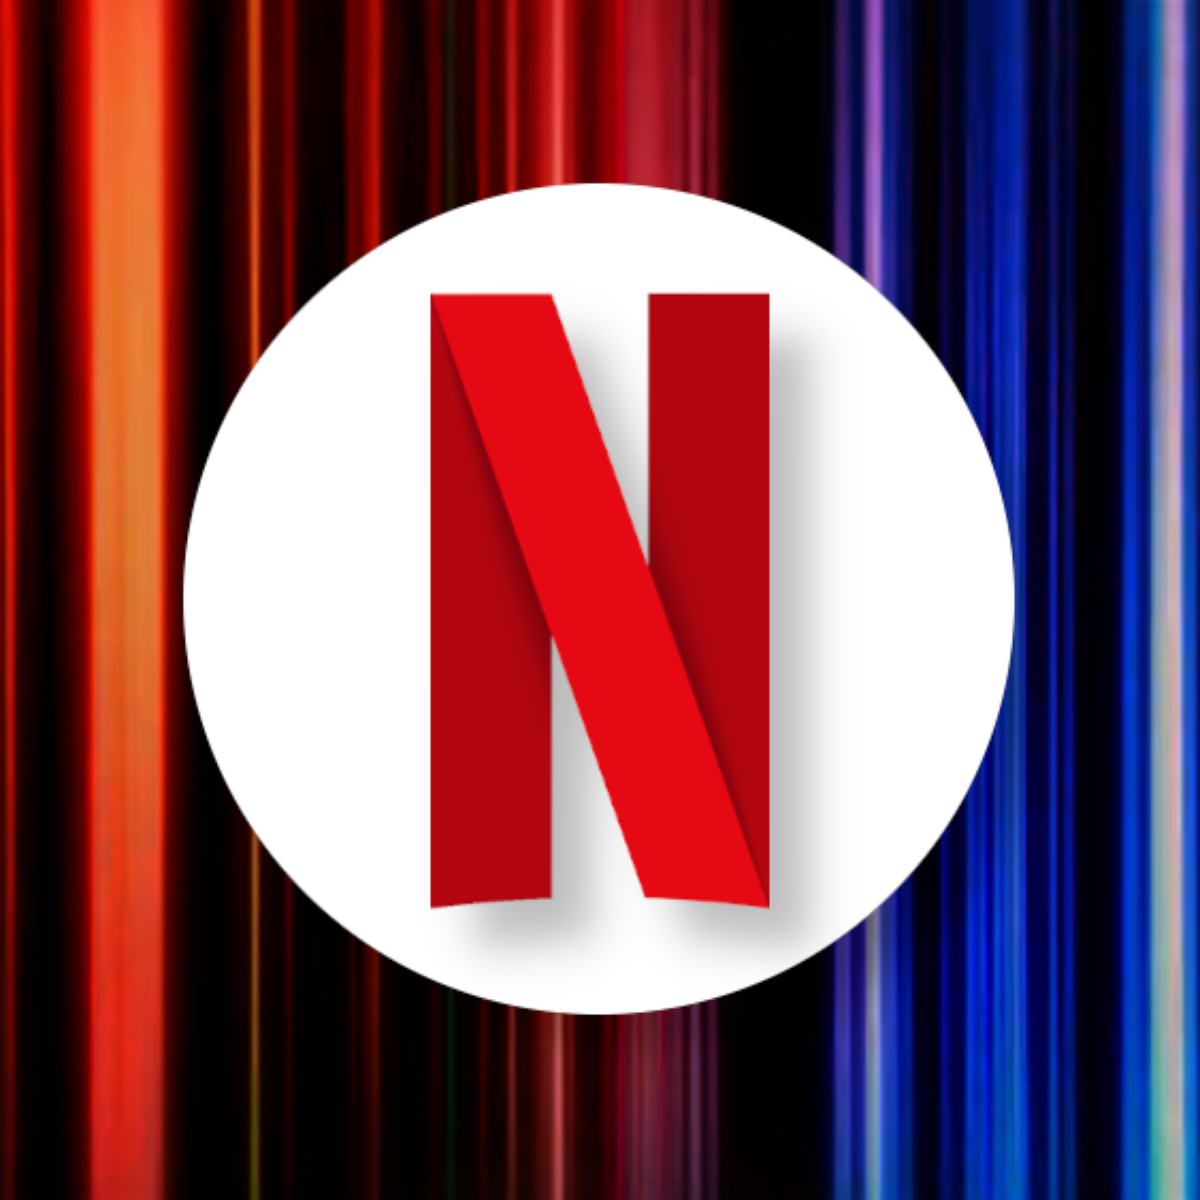 Netflix enfrenta cancelamentos de assinatura em massa